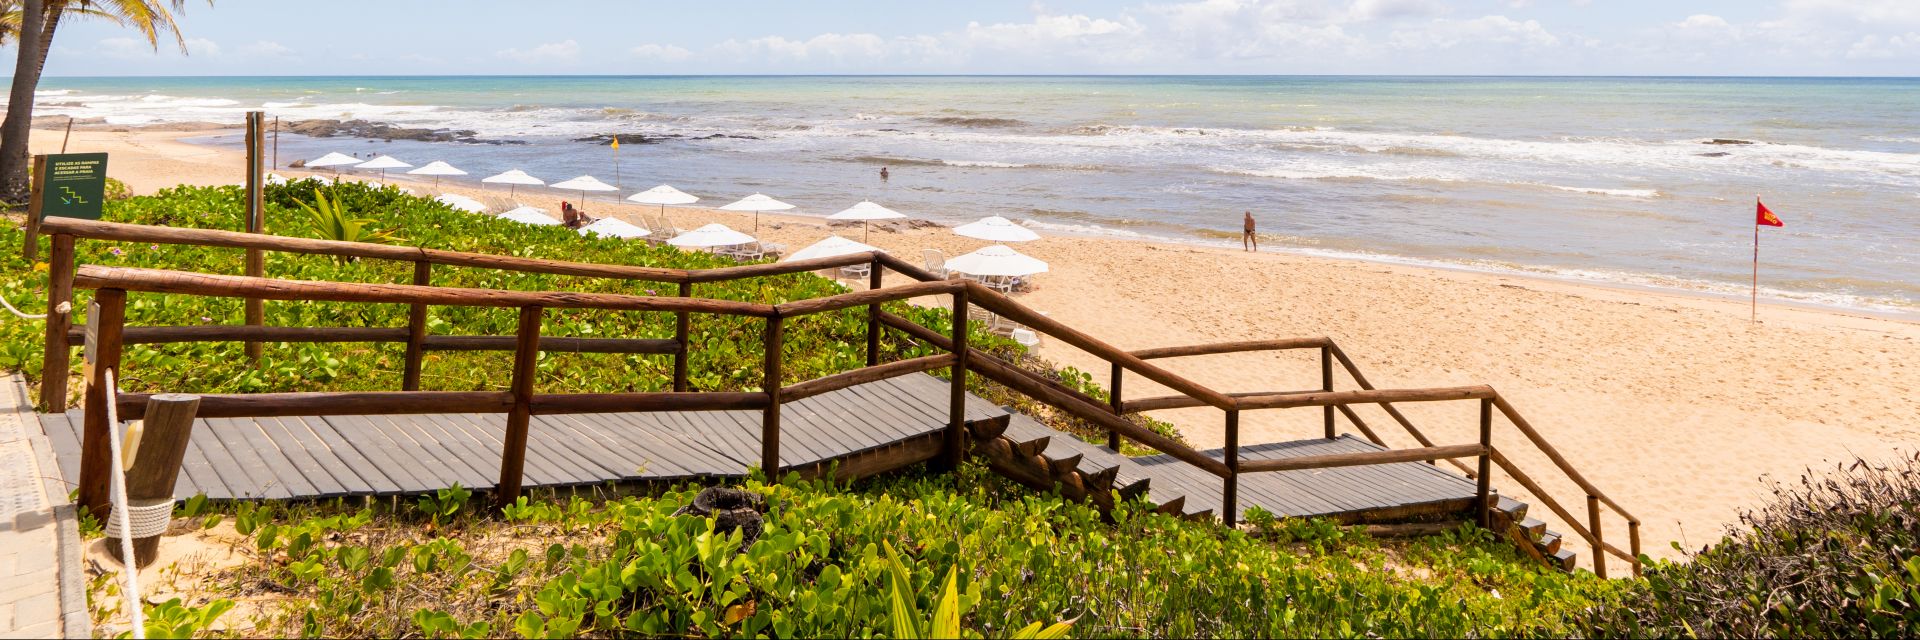 Resort All-Inclusive no nordeste: desfrute do melhor do Brasil